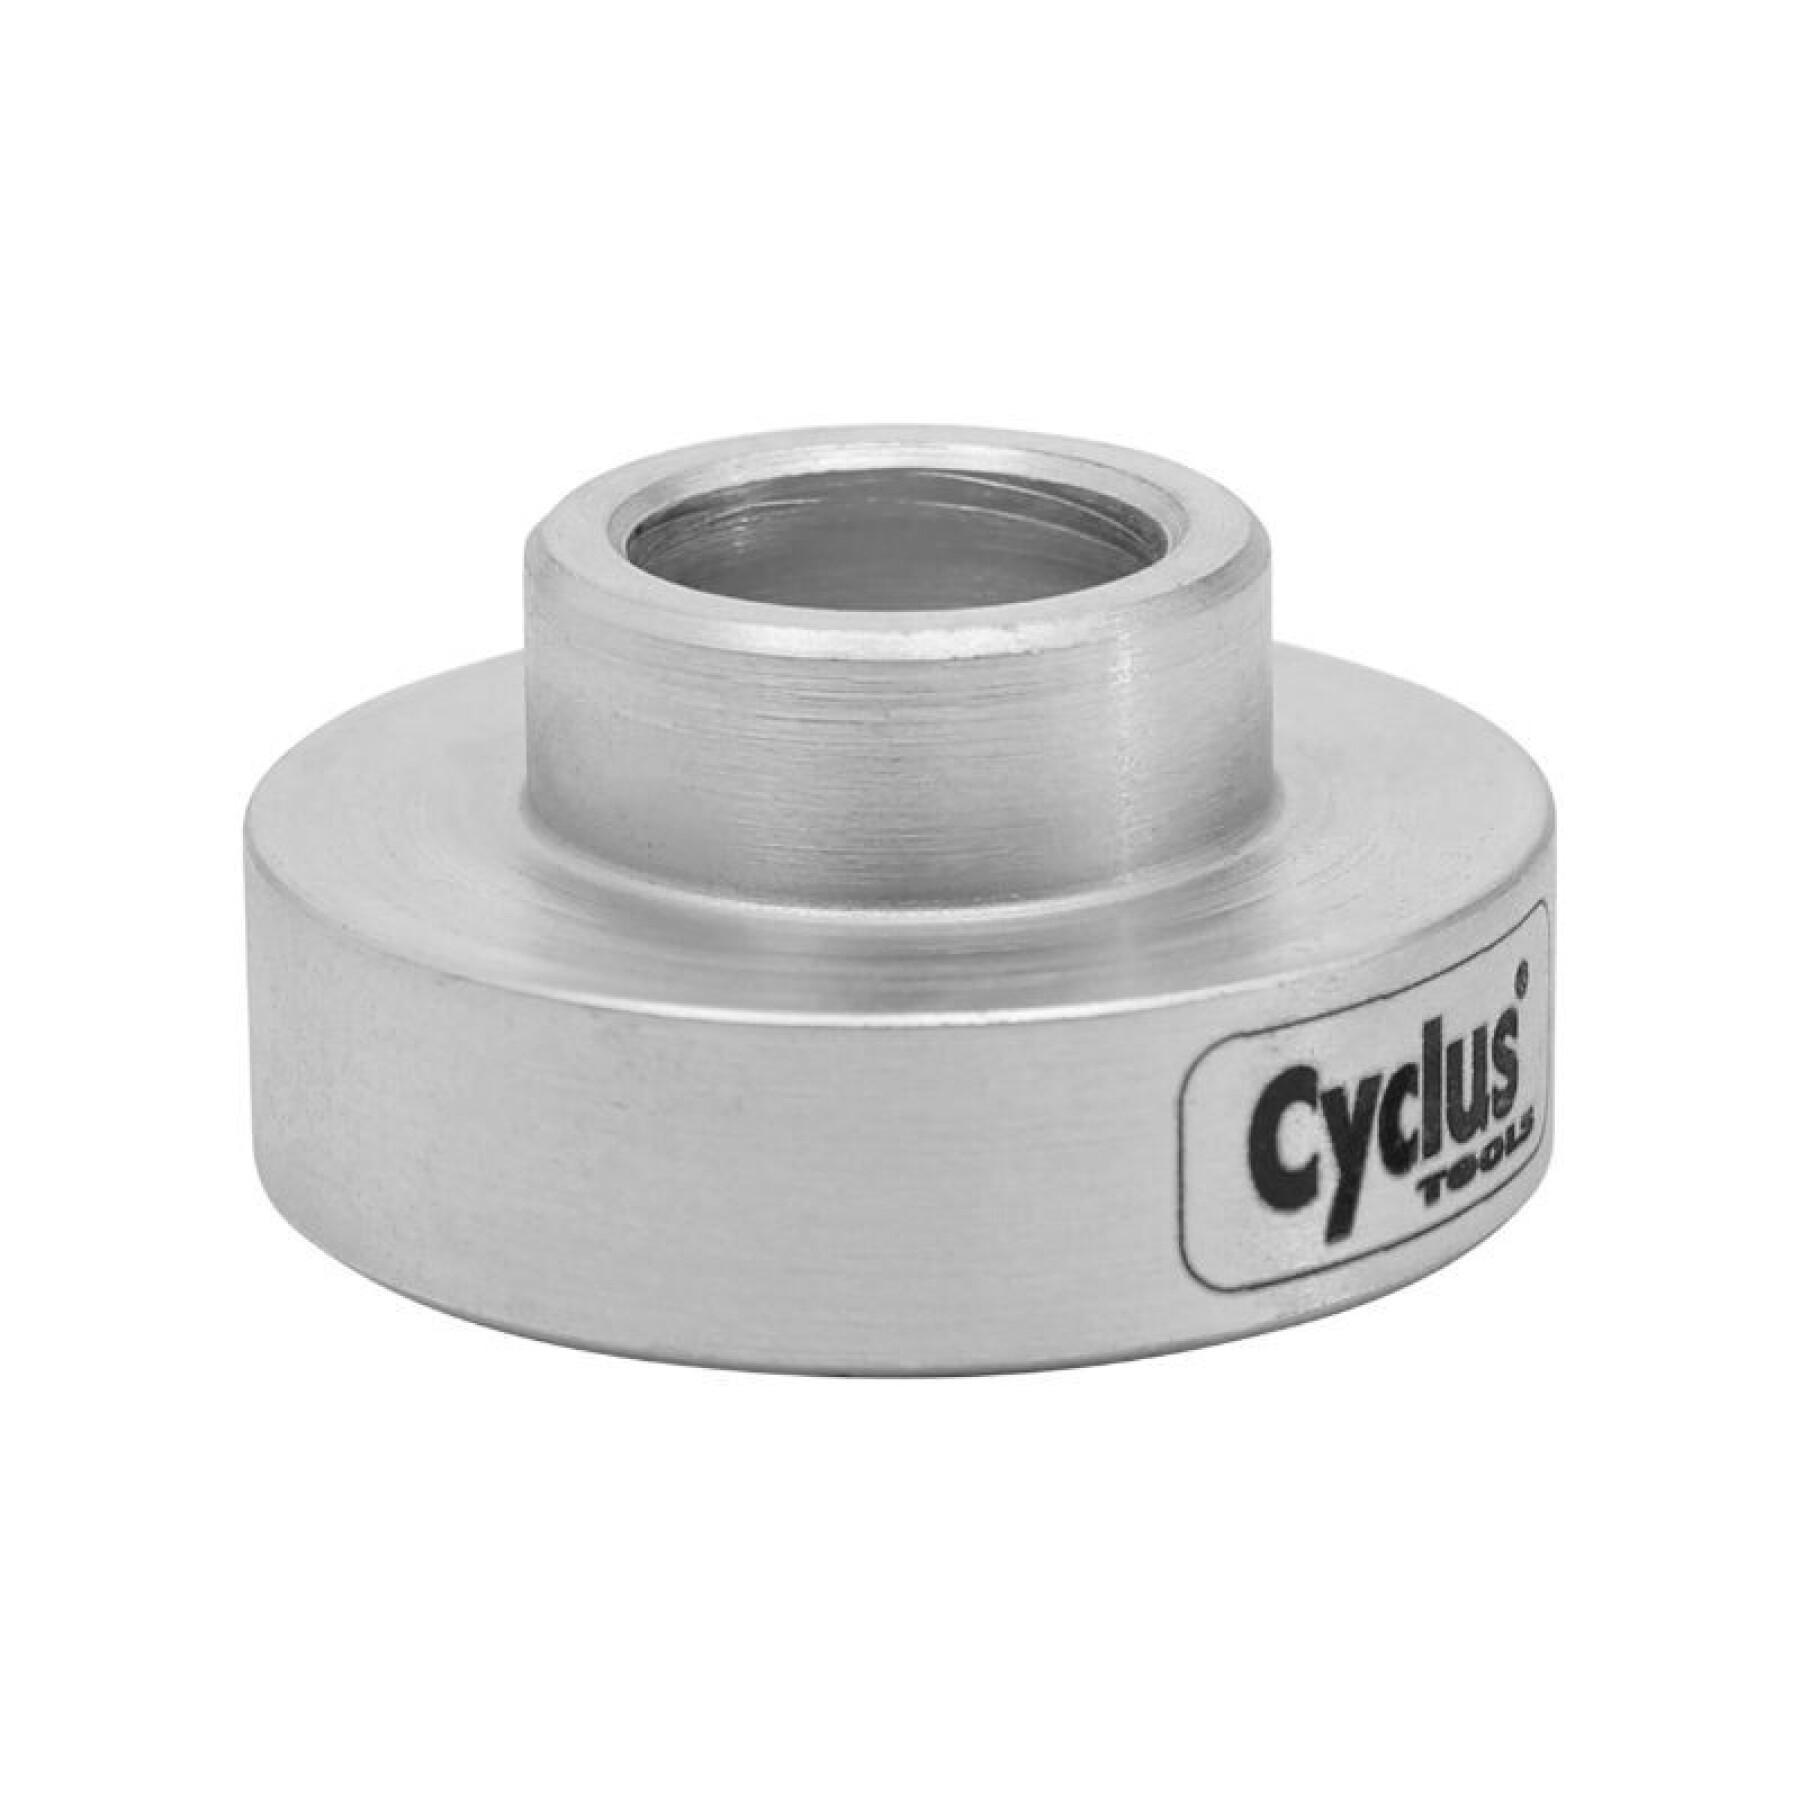 Herramienta pro Soporte de rodamientos para utilizar con la prensa de rodamientos Cyclus ref 180126